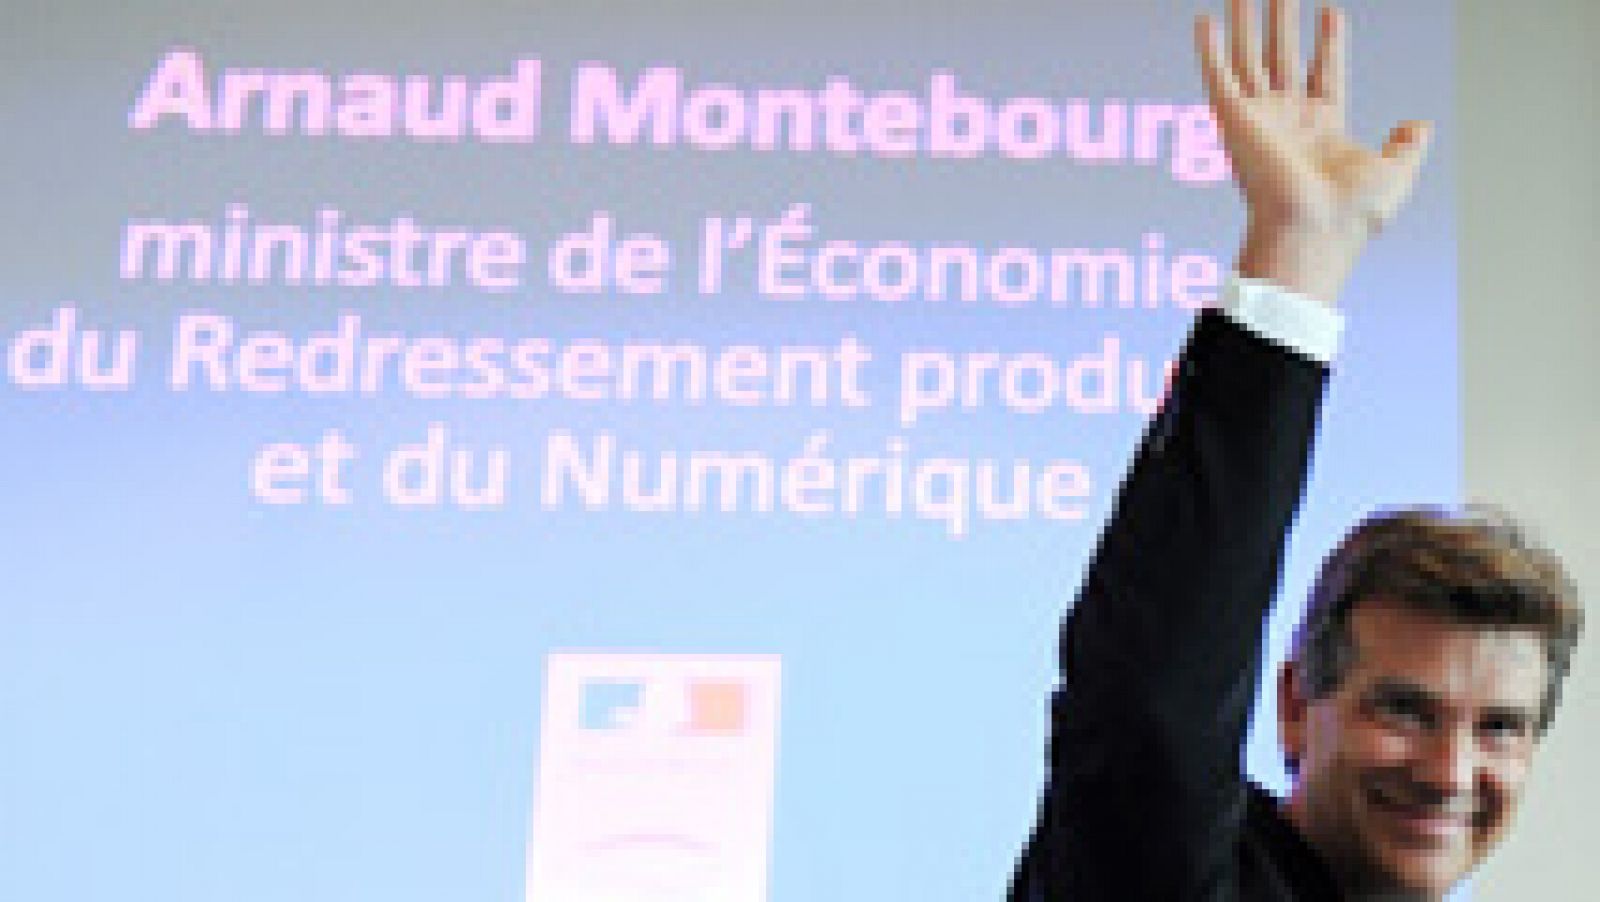 Las críticas de Montebourg a las políticas de austeridad desatan la crisis de Gobierno en Francia